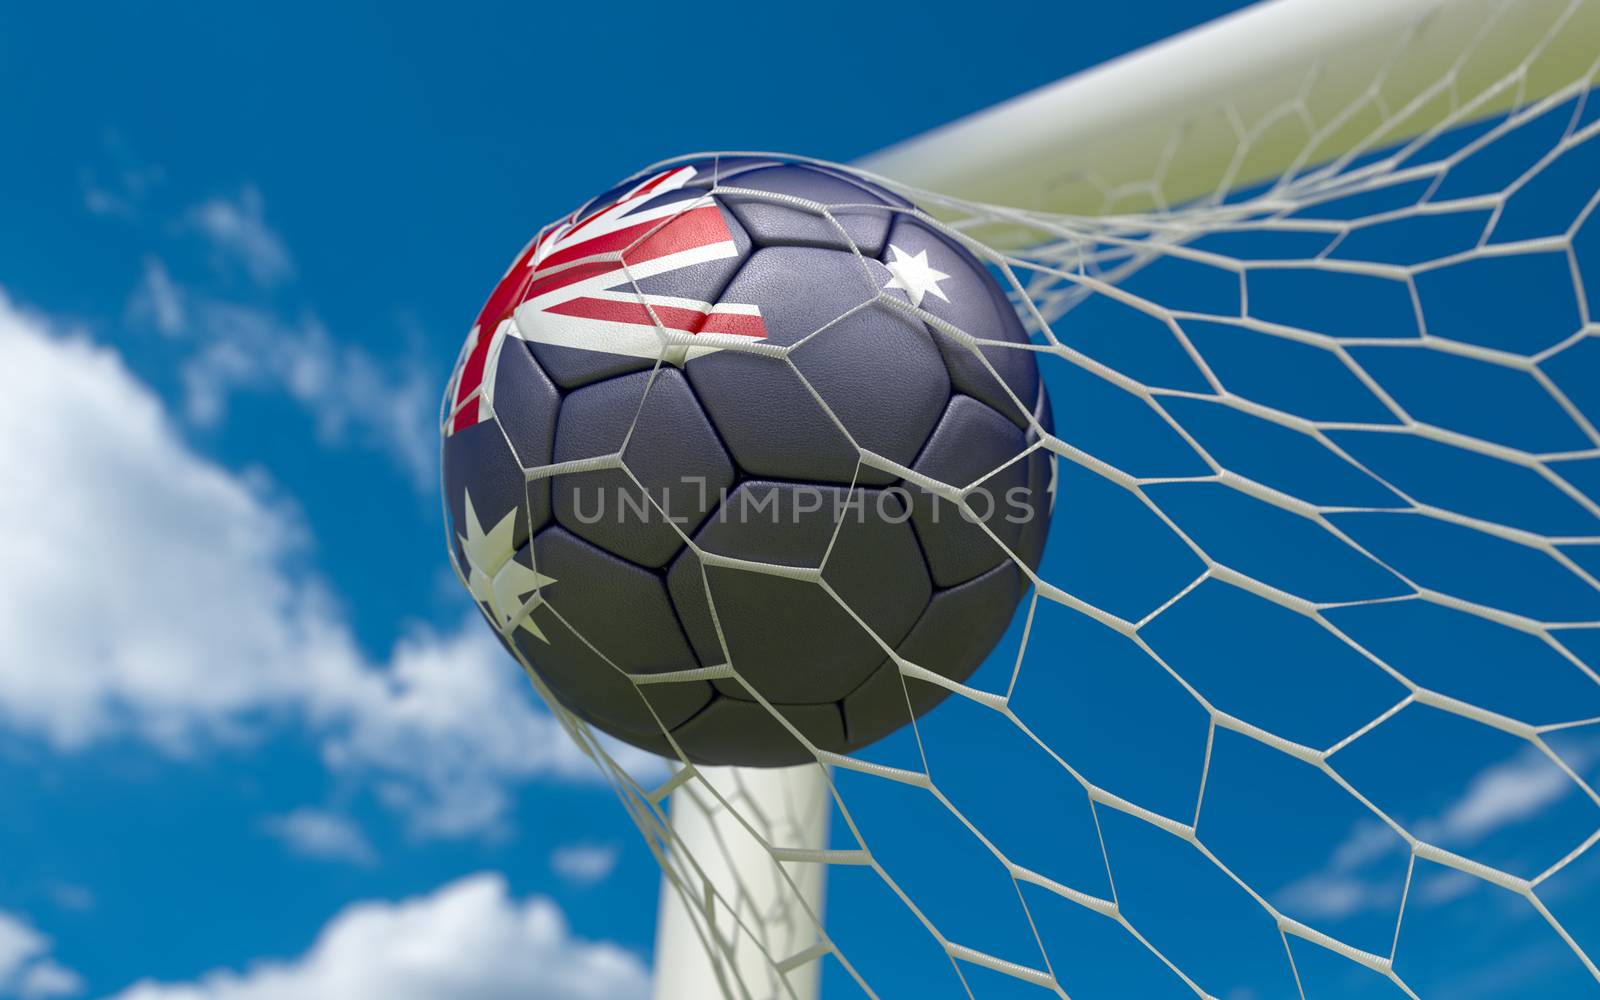 Australia flag and soccer ball, football in goal net